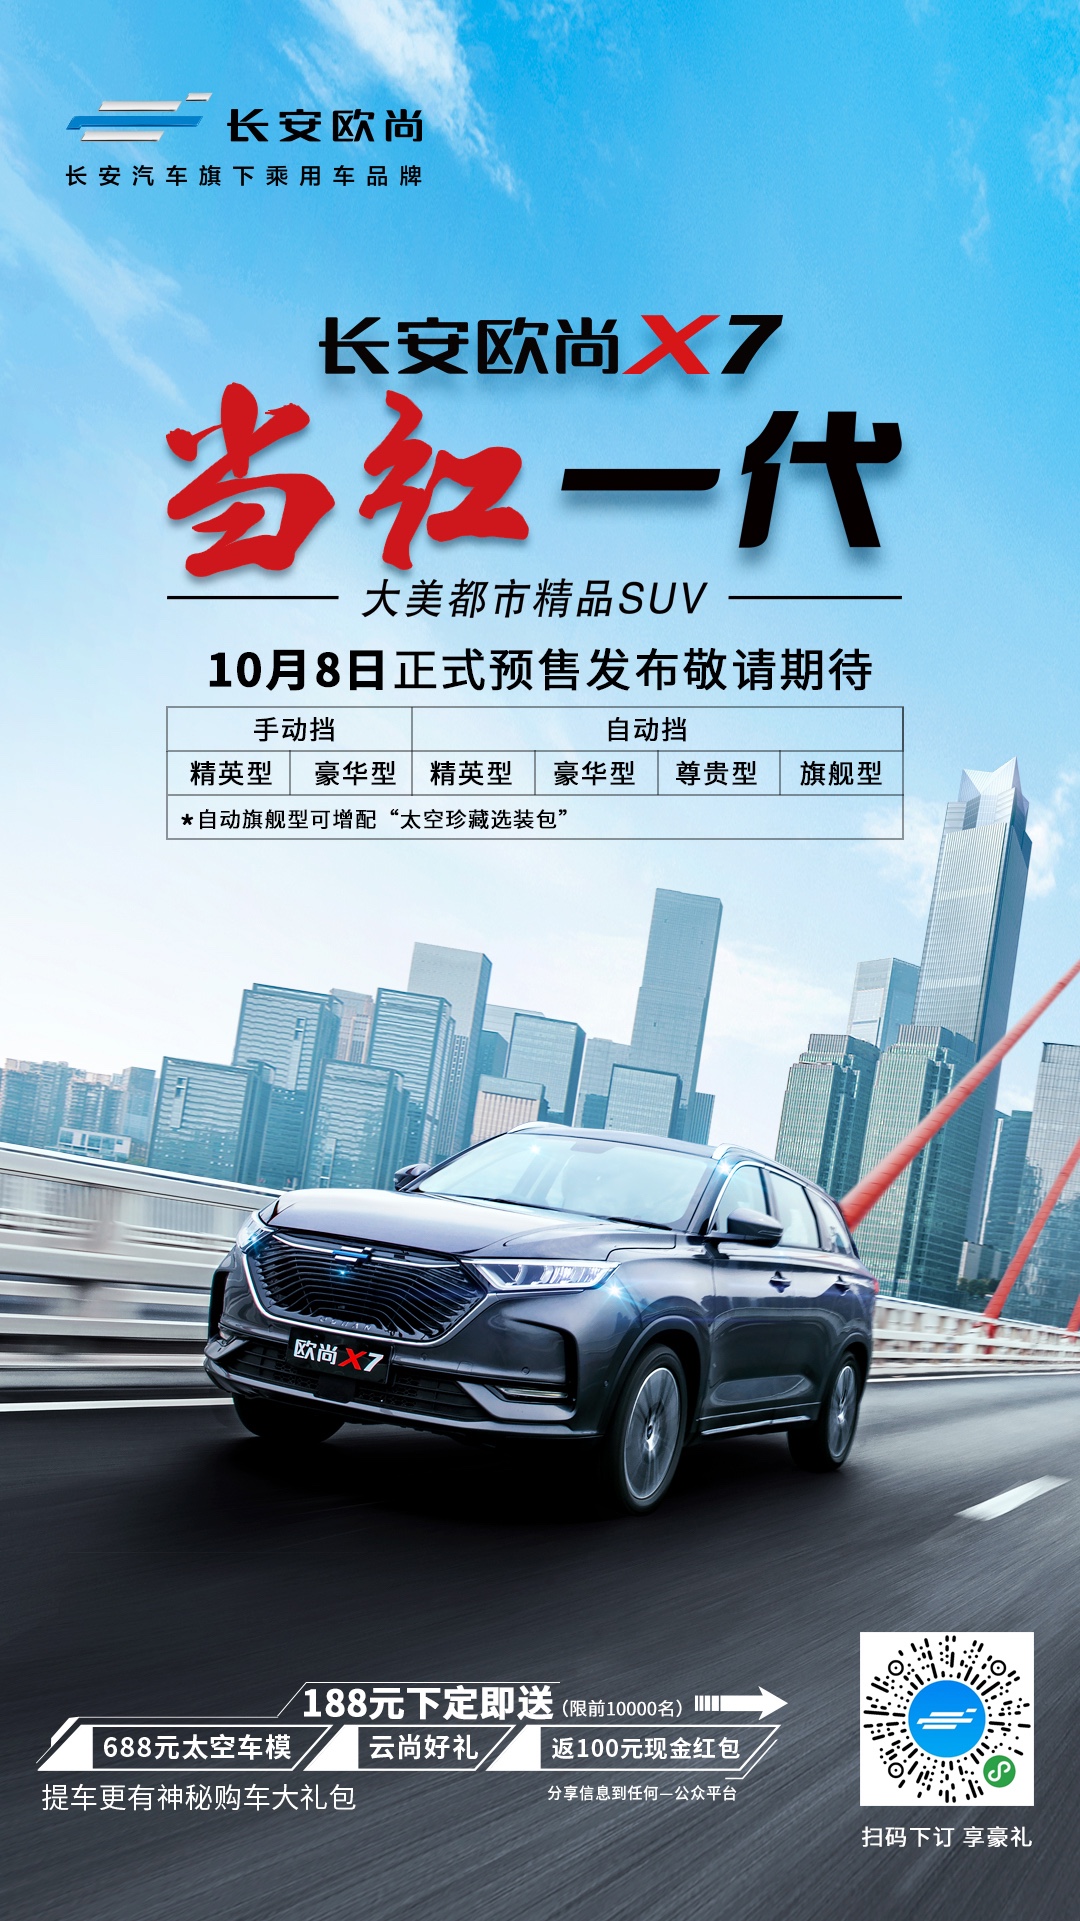 都市SUV长安欧尚X7 将于10月8日开启预售